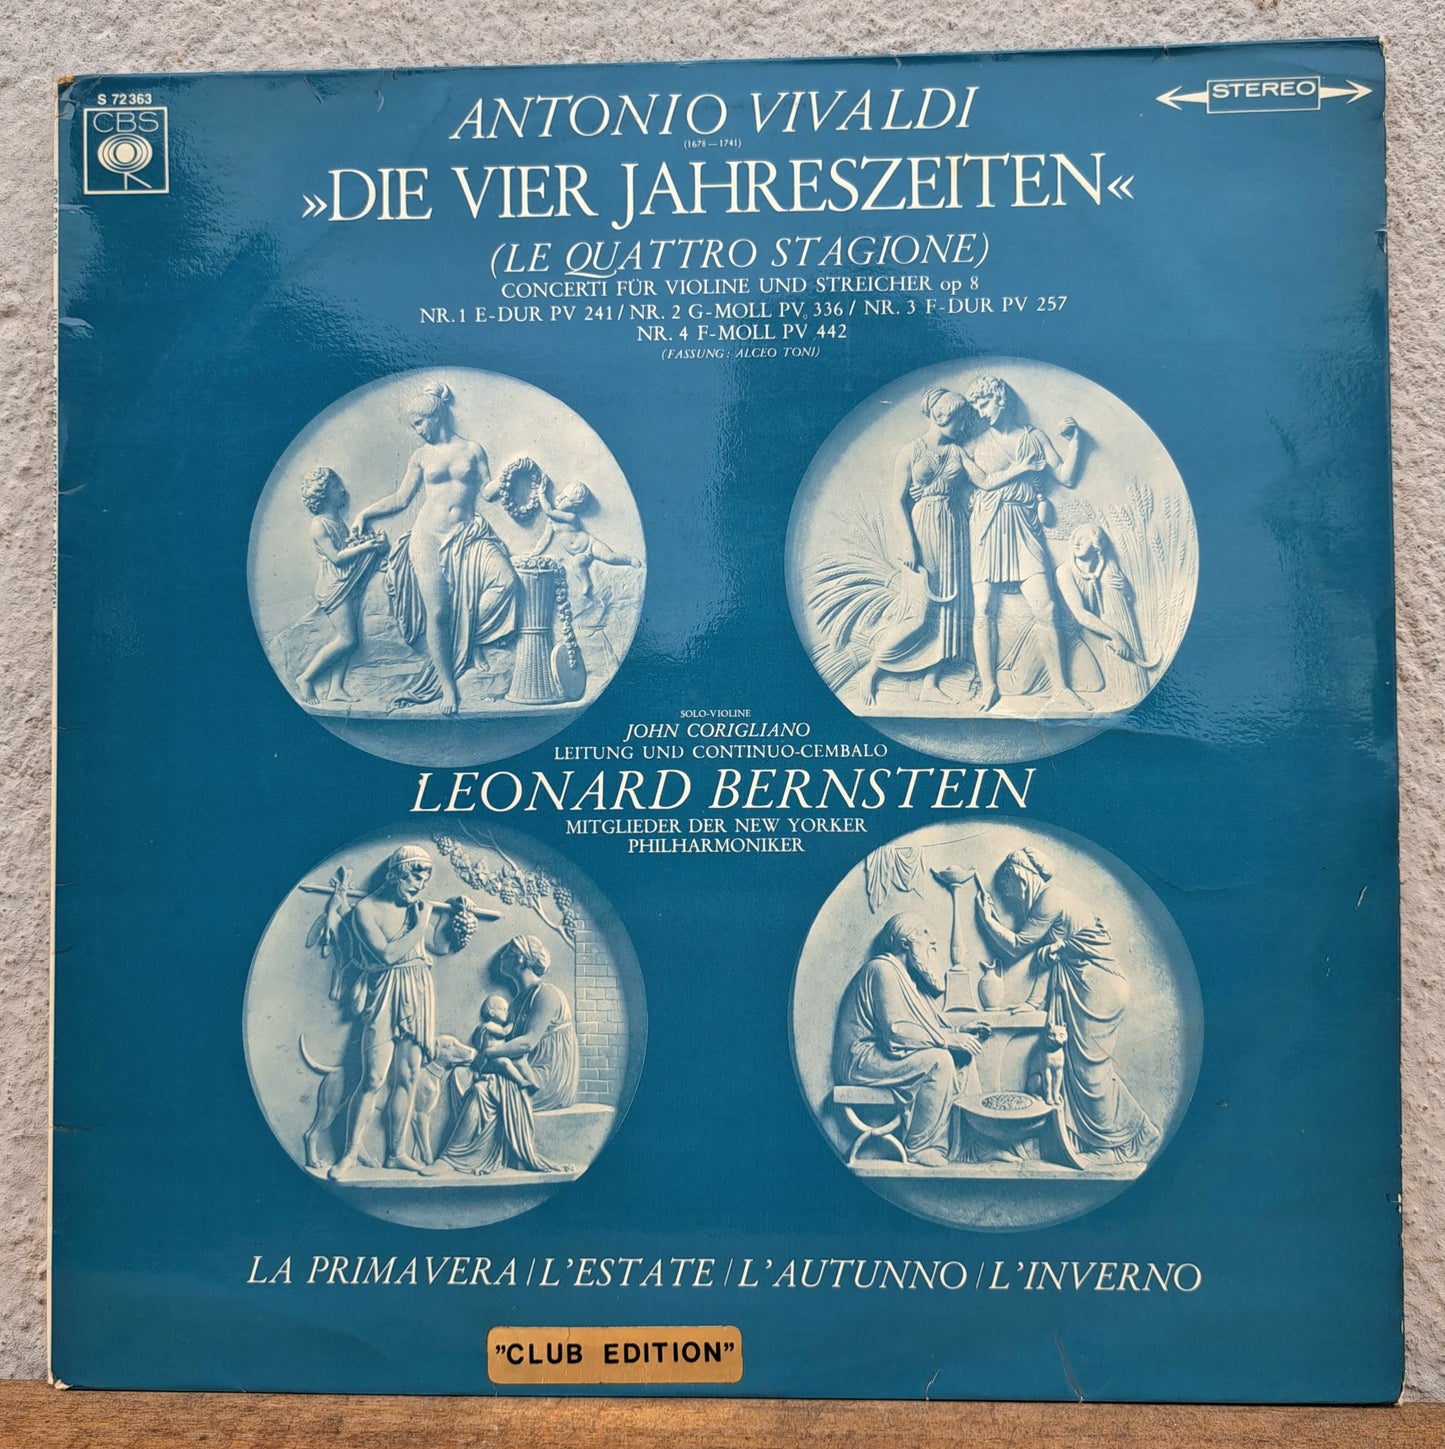 Antonio Vivaldi - Die vier jahreszeiten